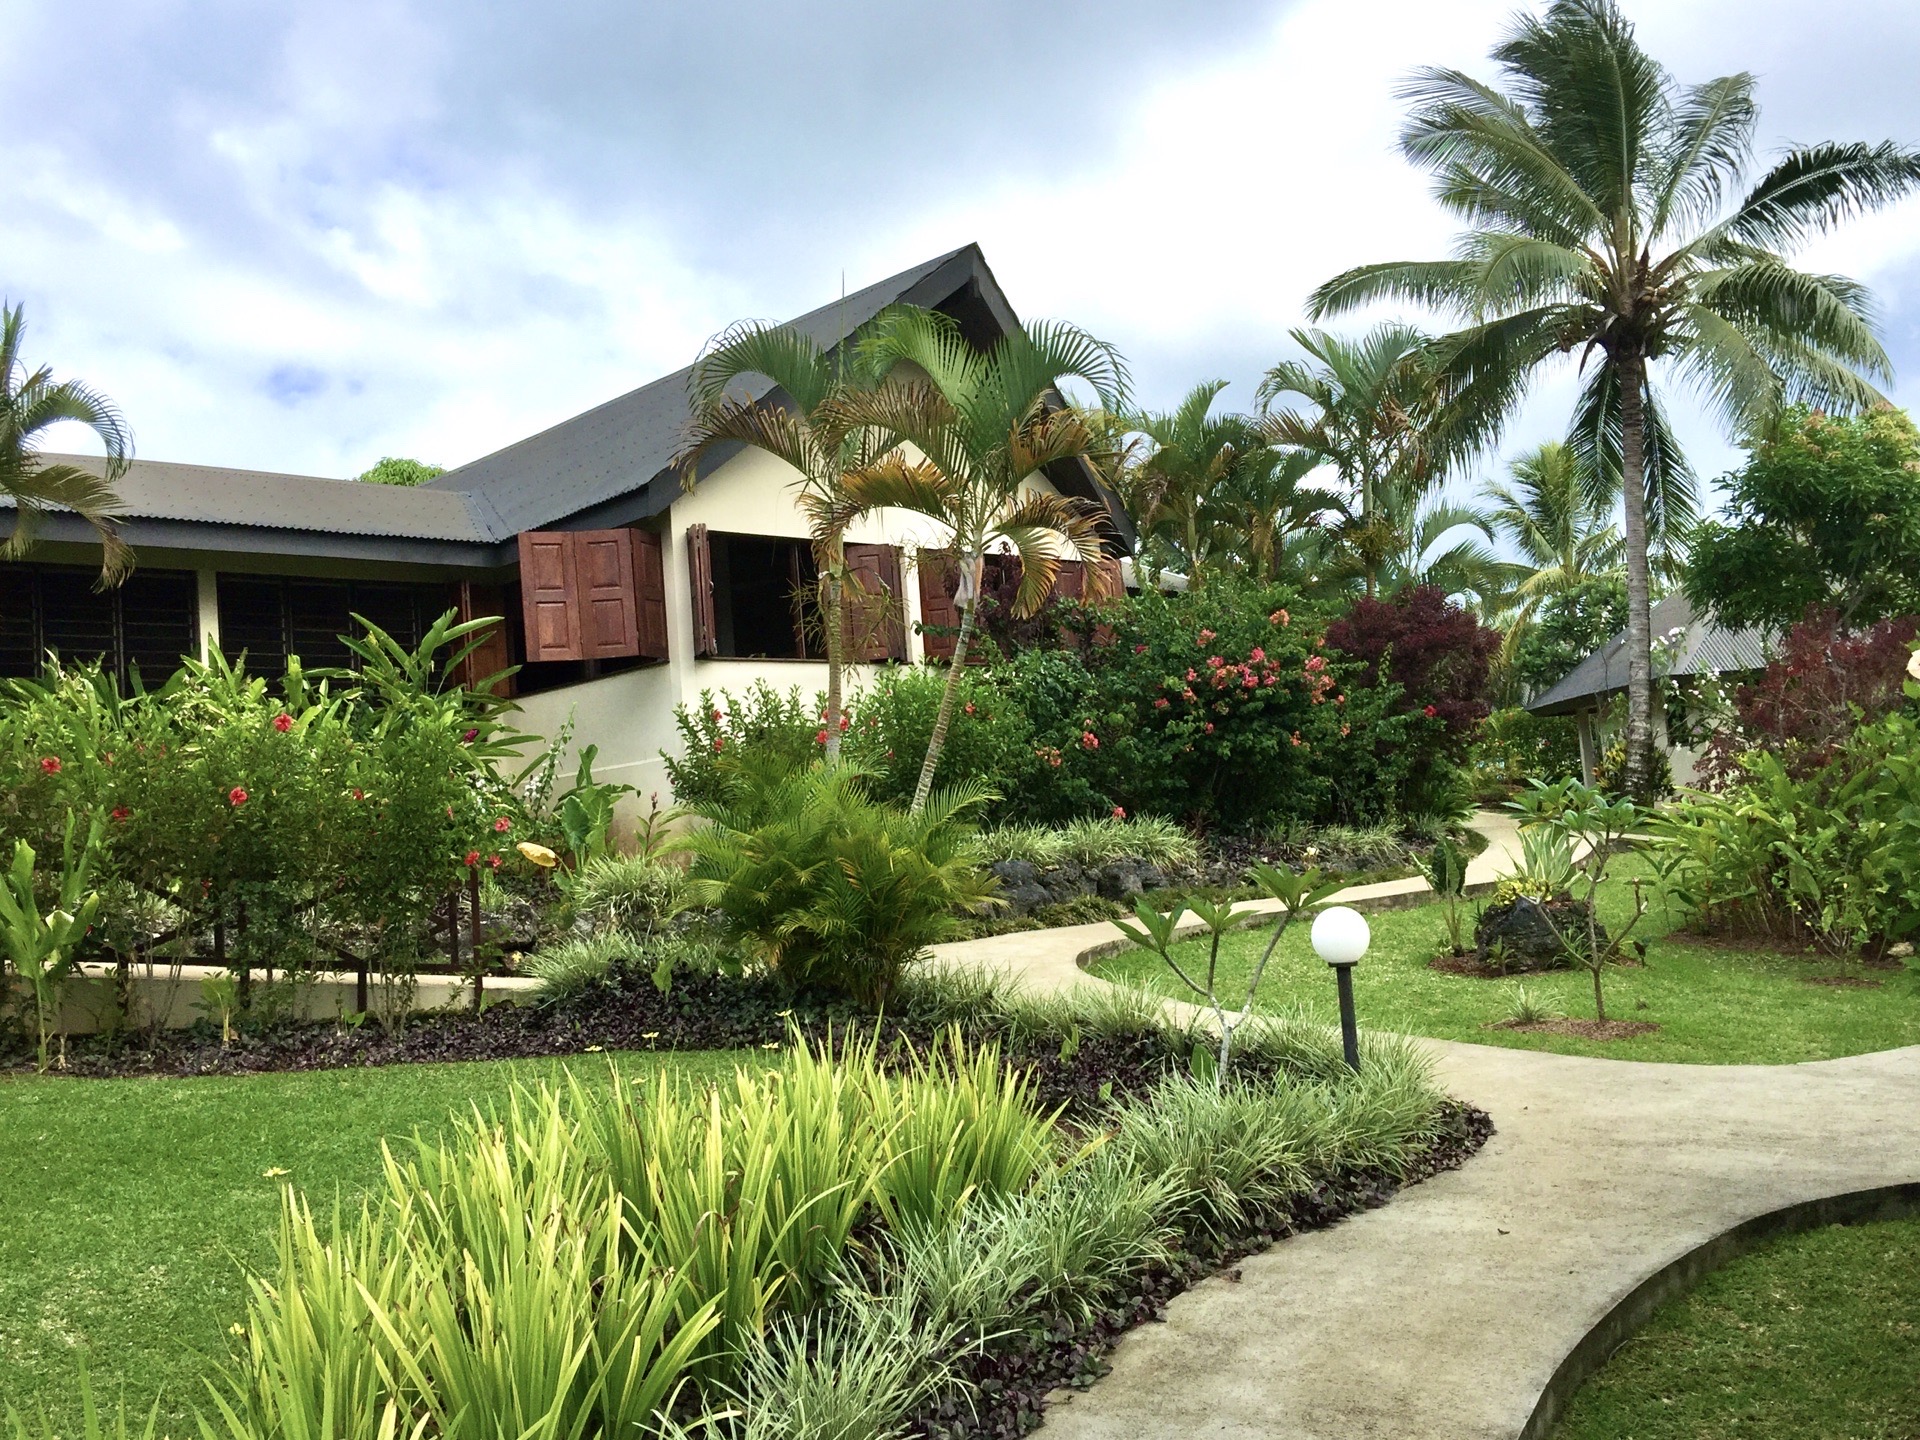 很喜欢这间在瓦努阿图的芒果度假酒店。环境优美，舒适，怡人。是想发呆的好地方。